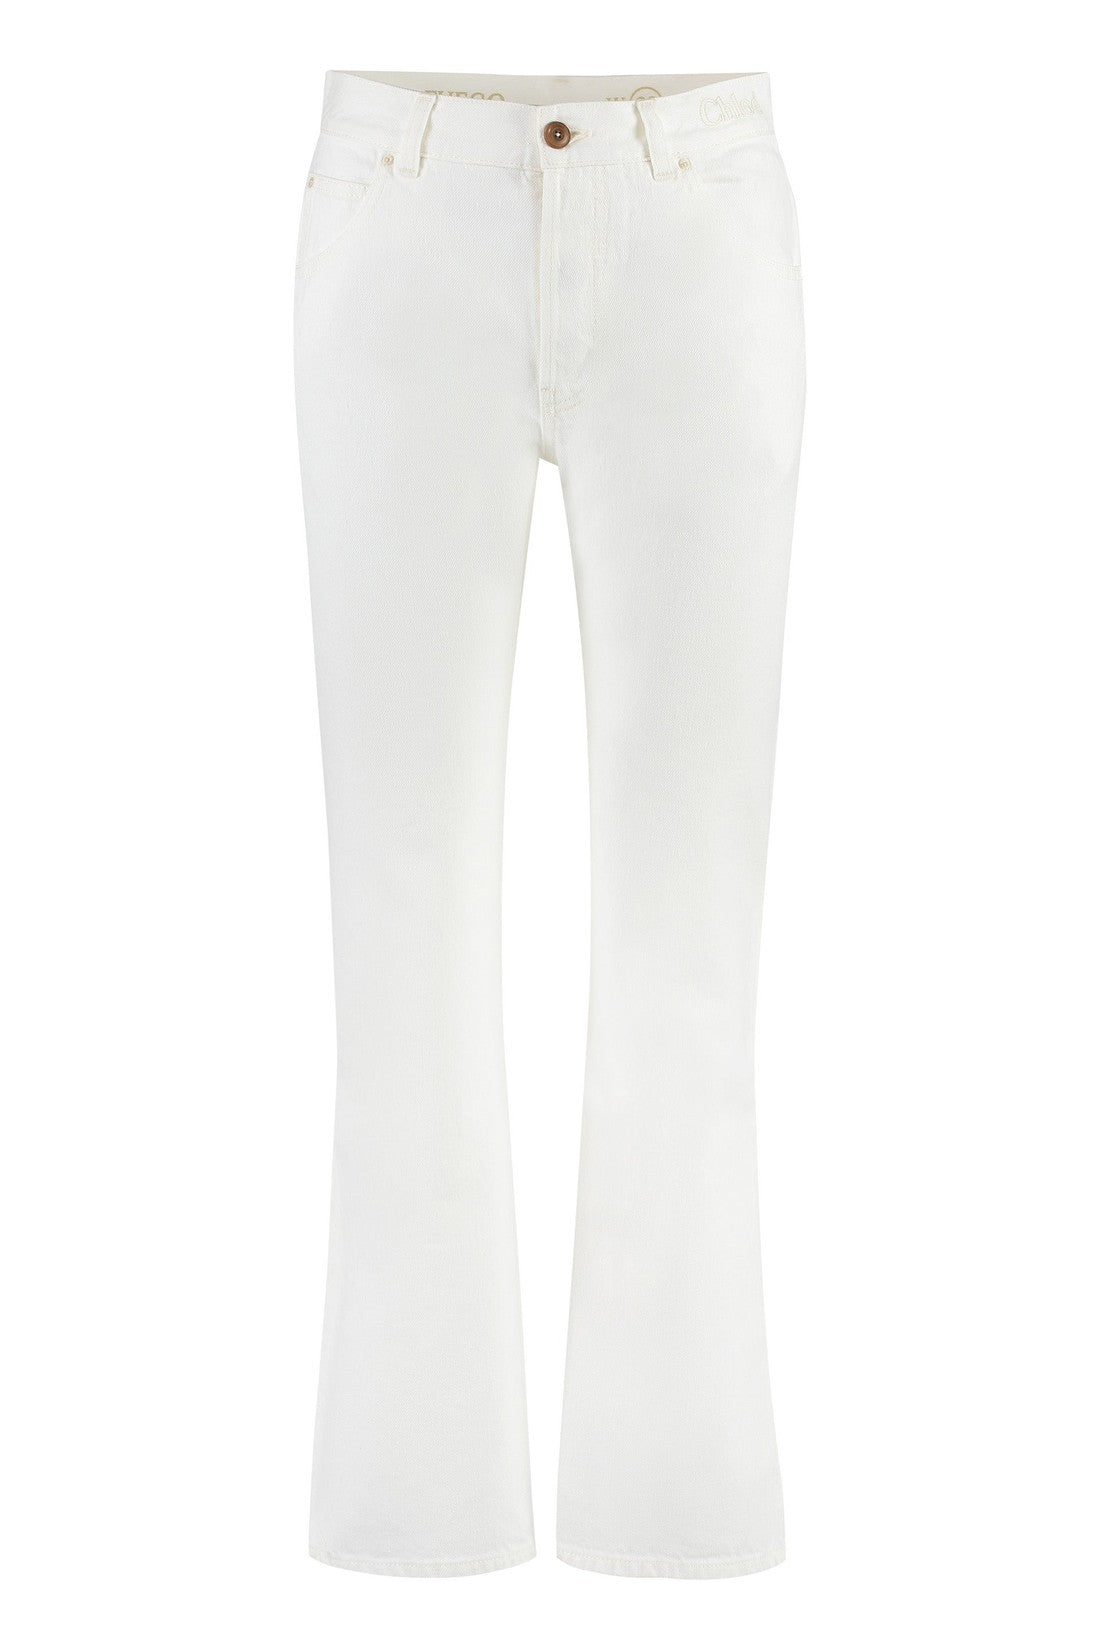 Chloé-OUTLET-SALE-5-pocket straight-leg jeans-ARCHIVIST